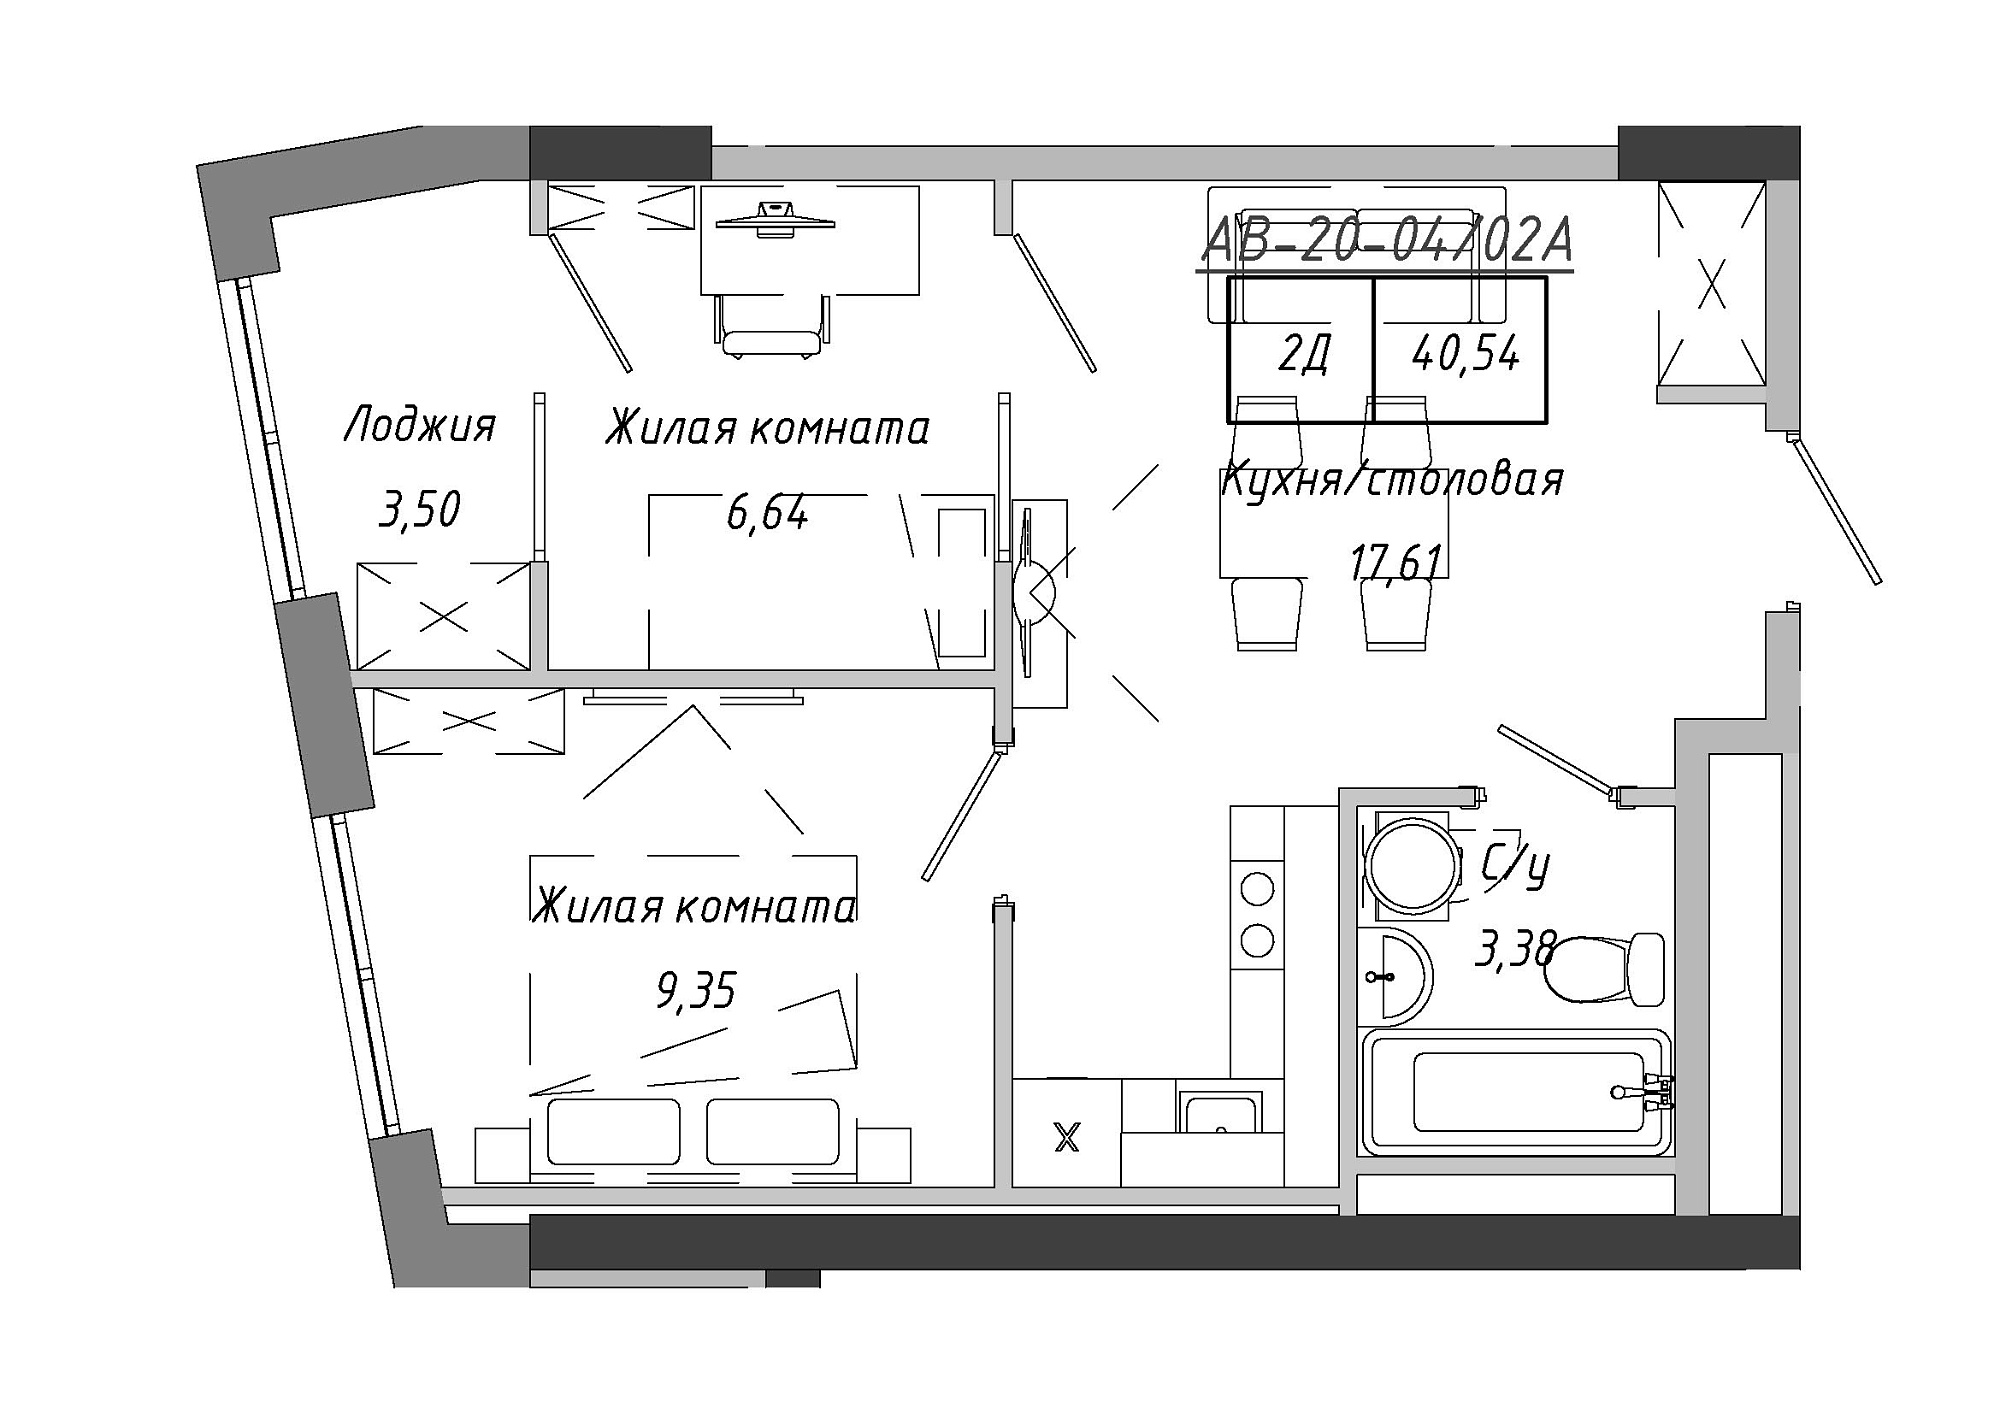 Планування 2-к квартира площею 40.54м2, AB-20-04/0002а.